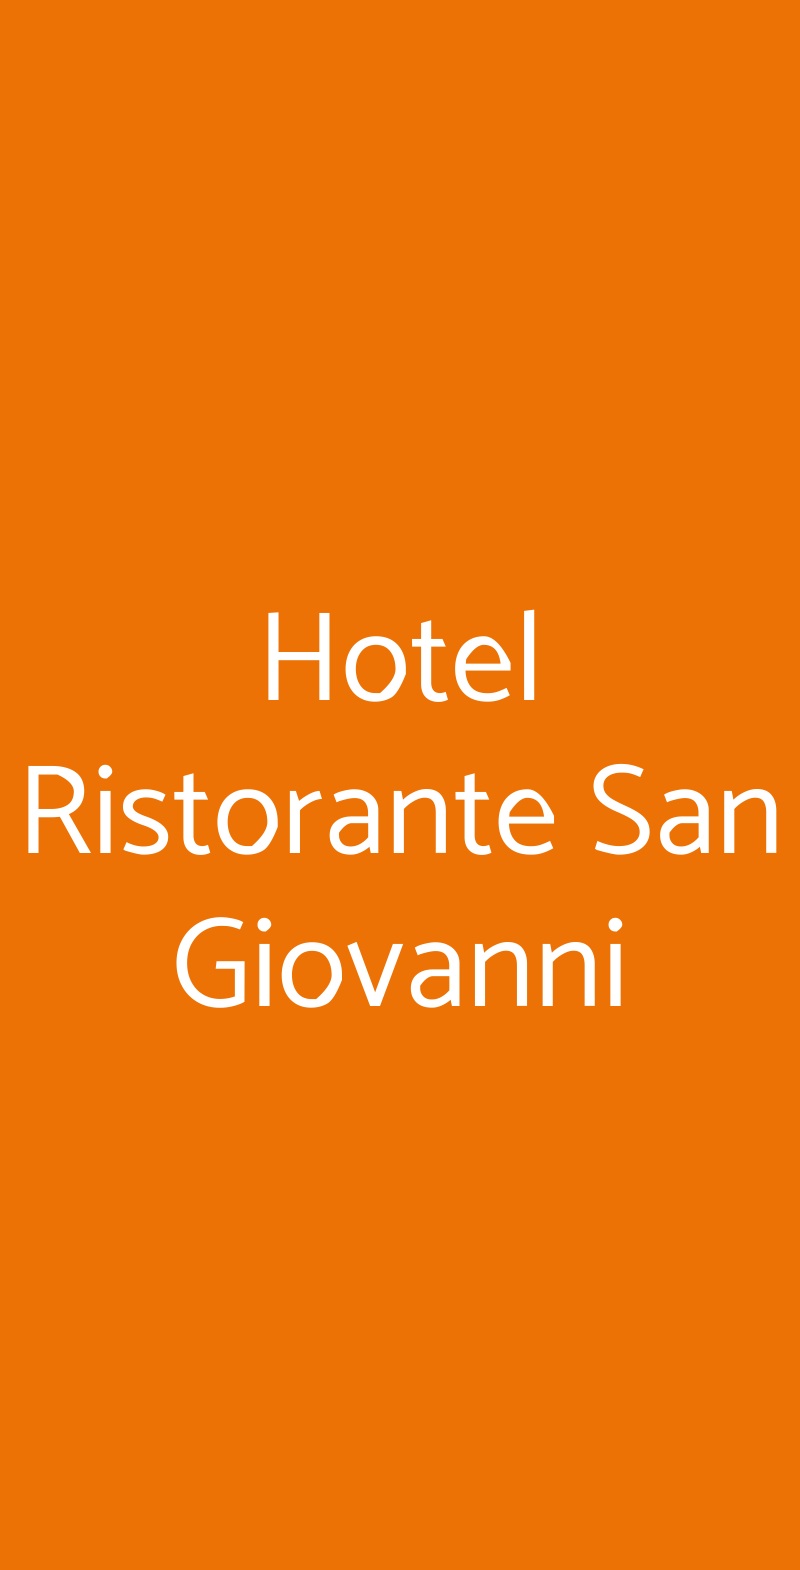 Hotel Ristorante San Giovanni Livigno menù 1 pagina